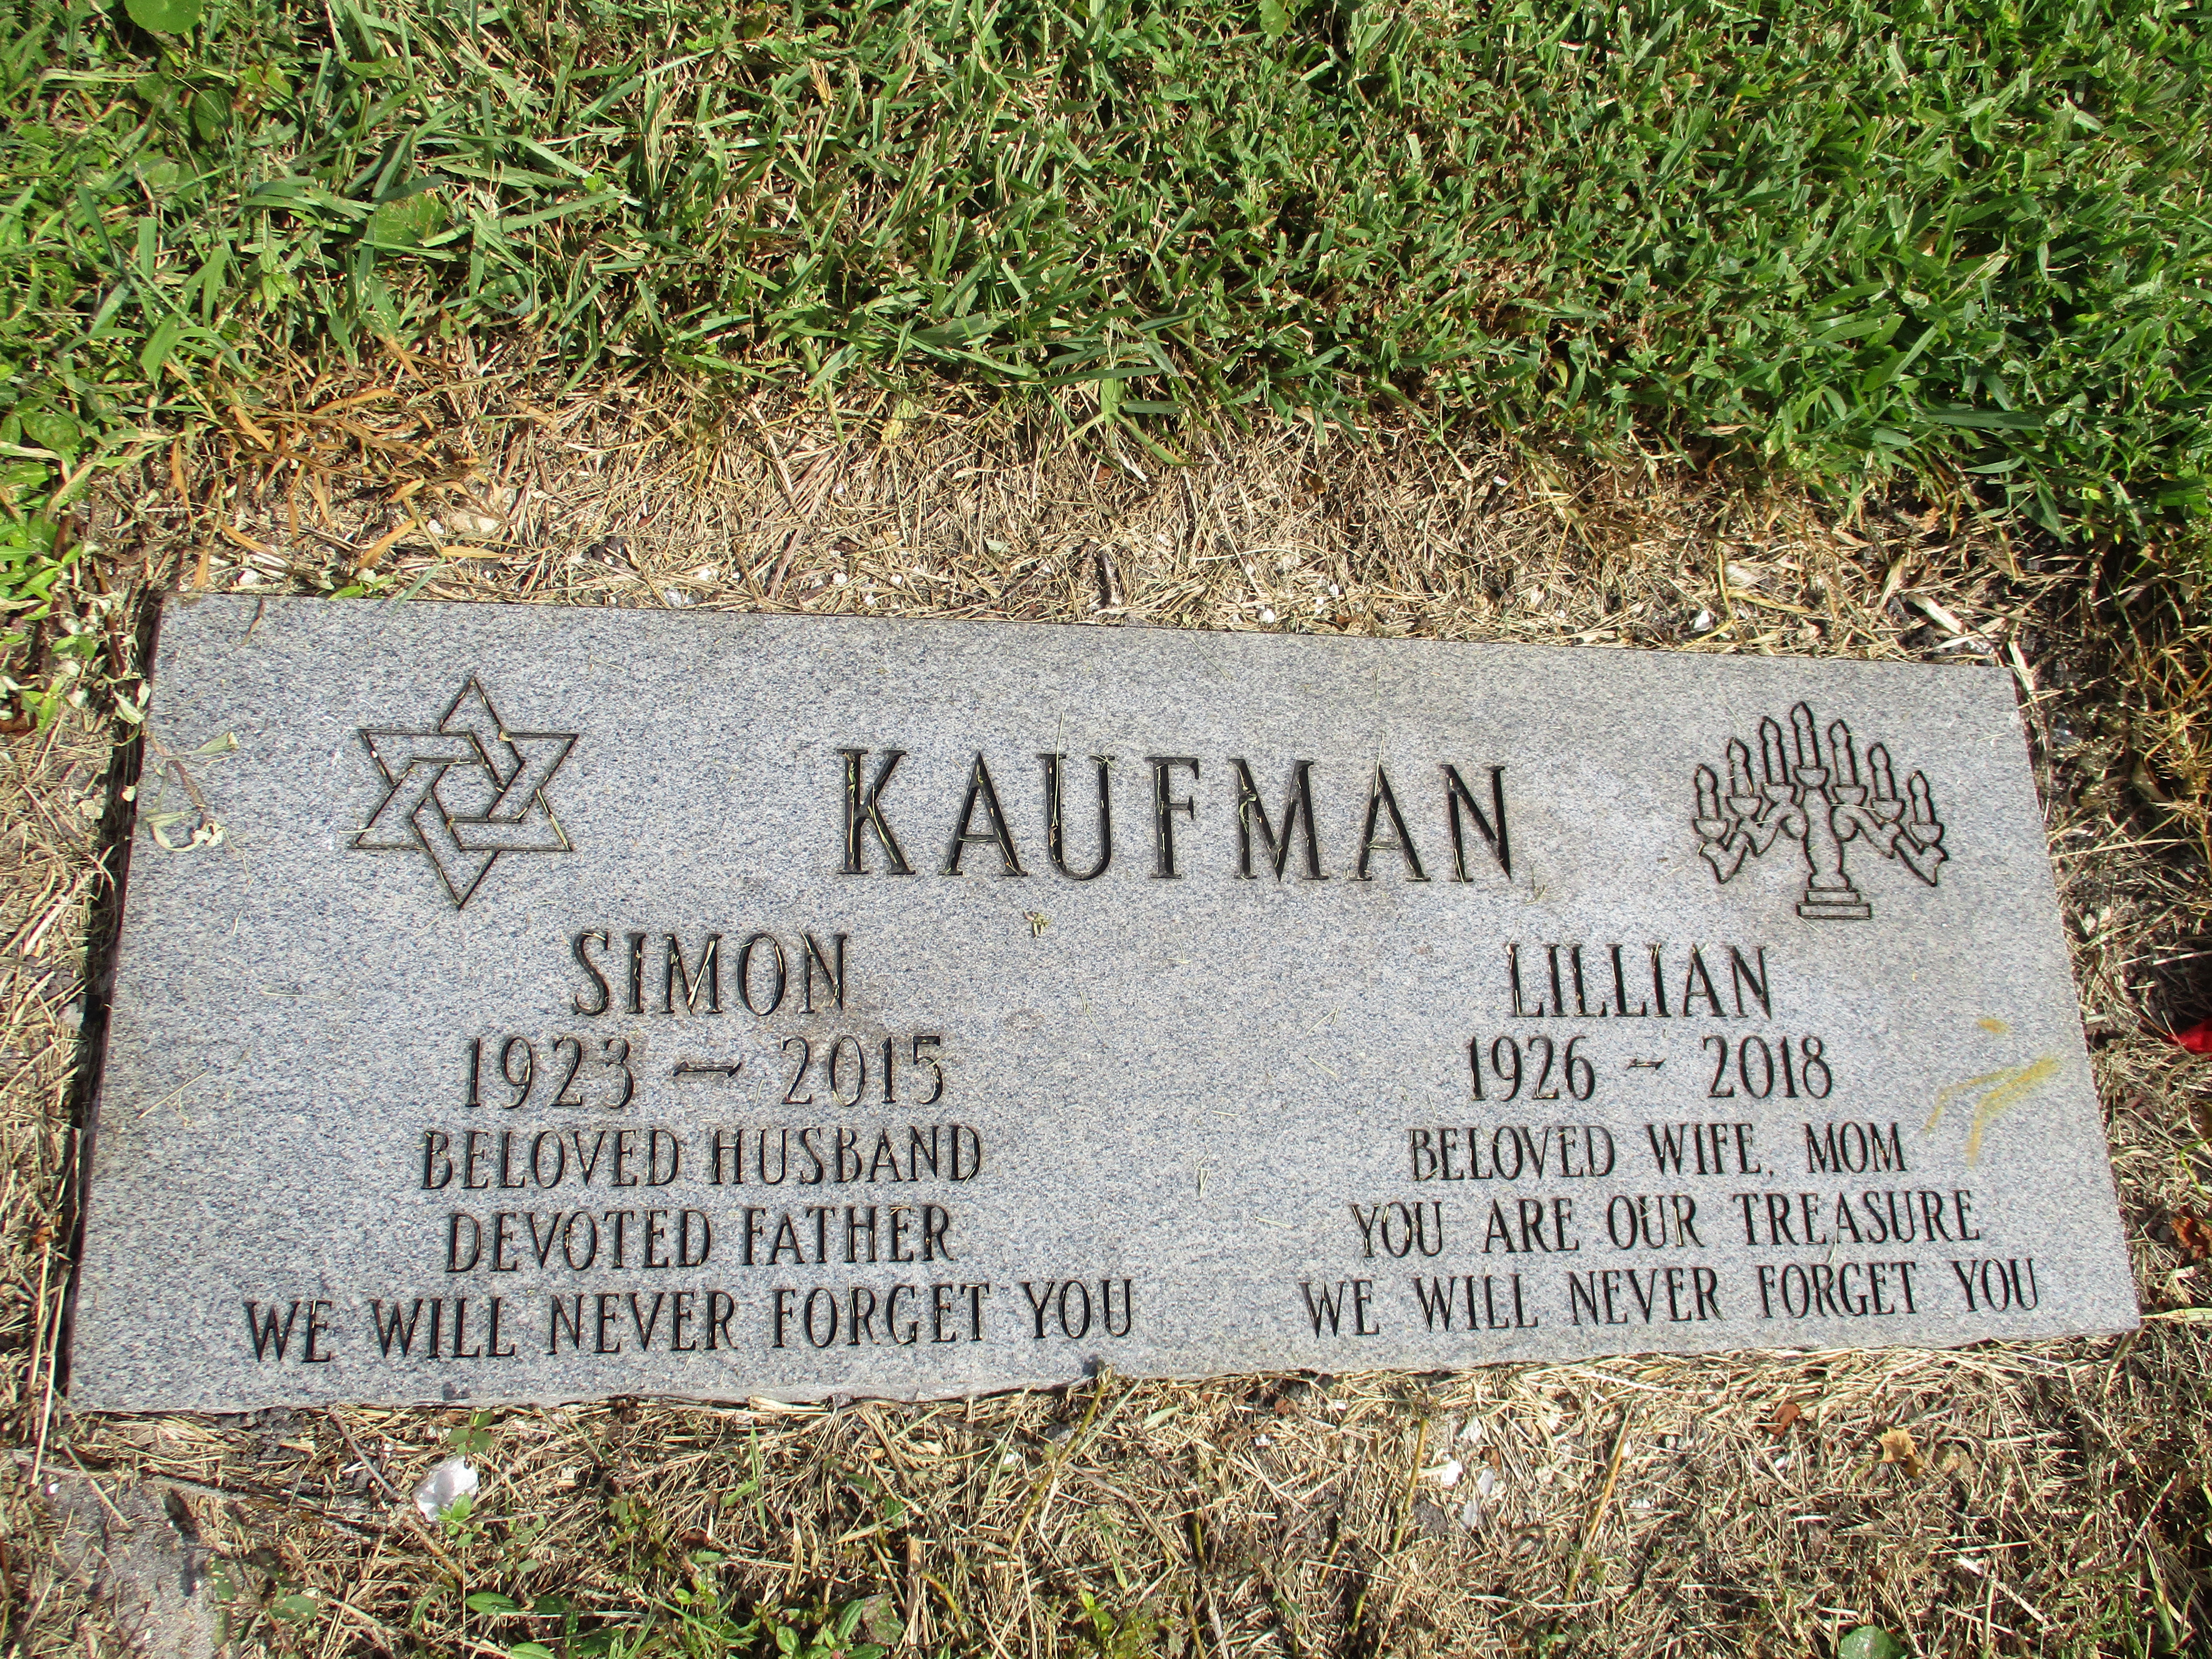 Simon Kaufman